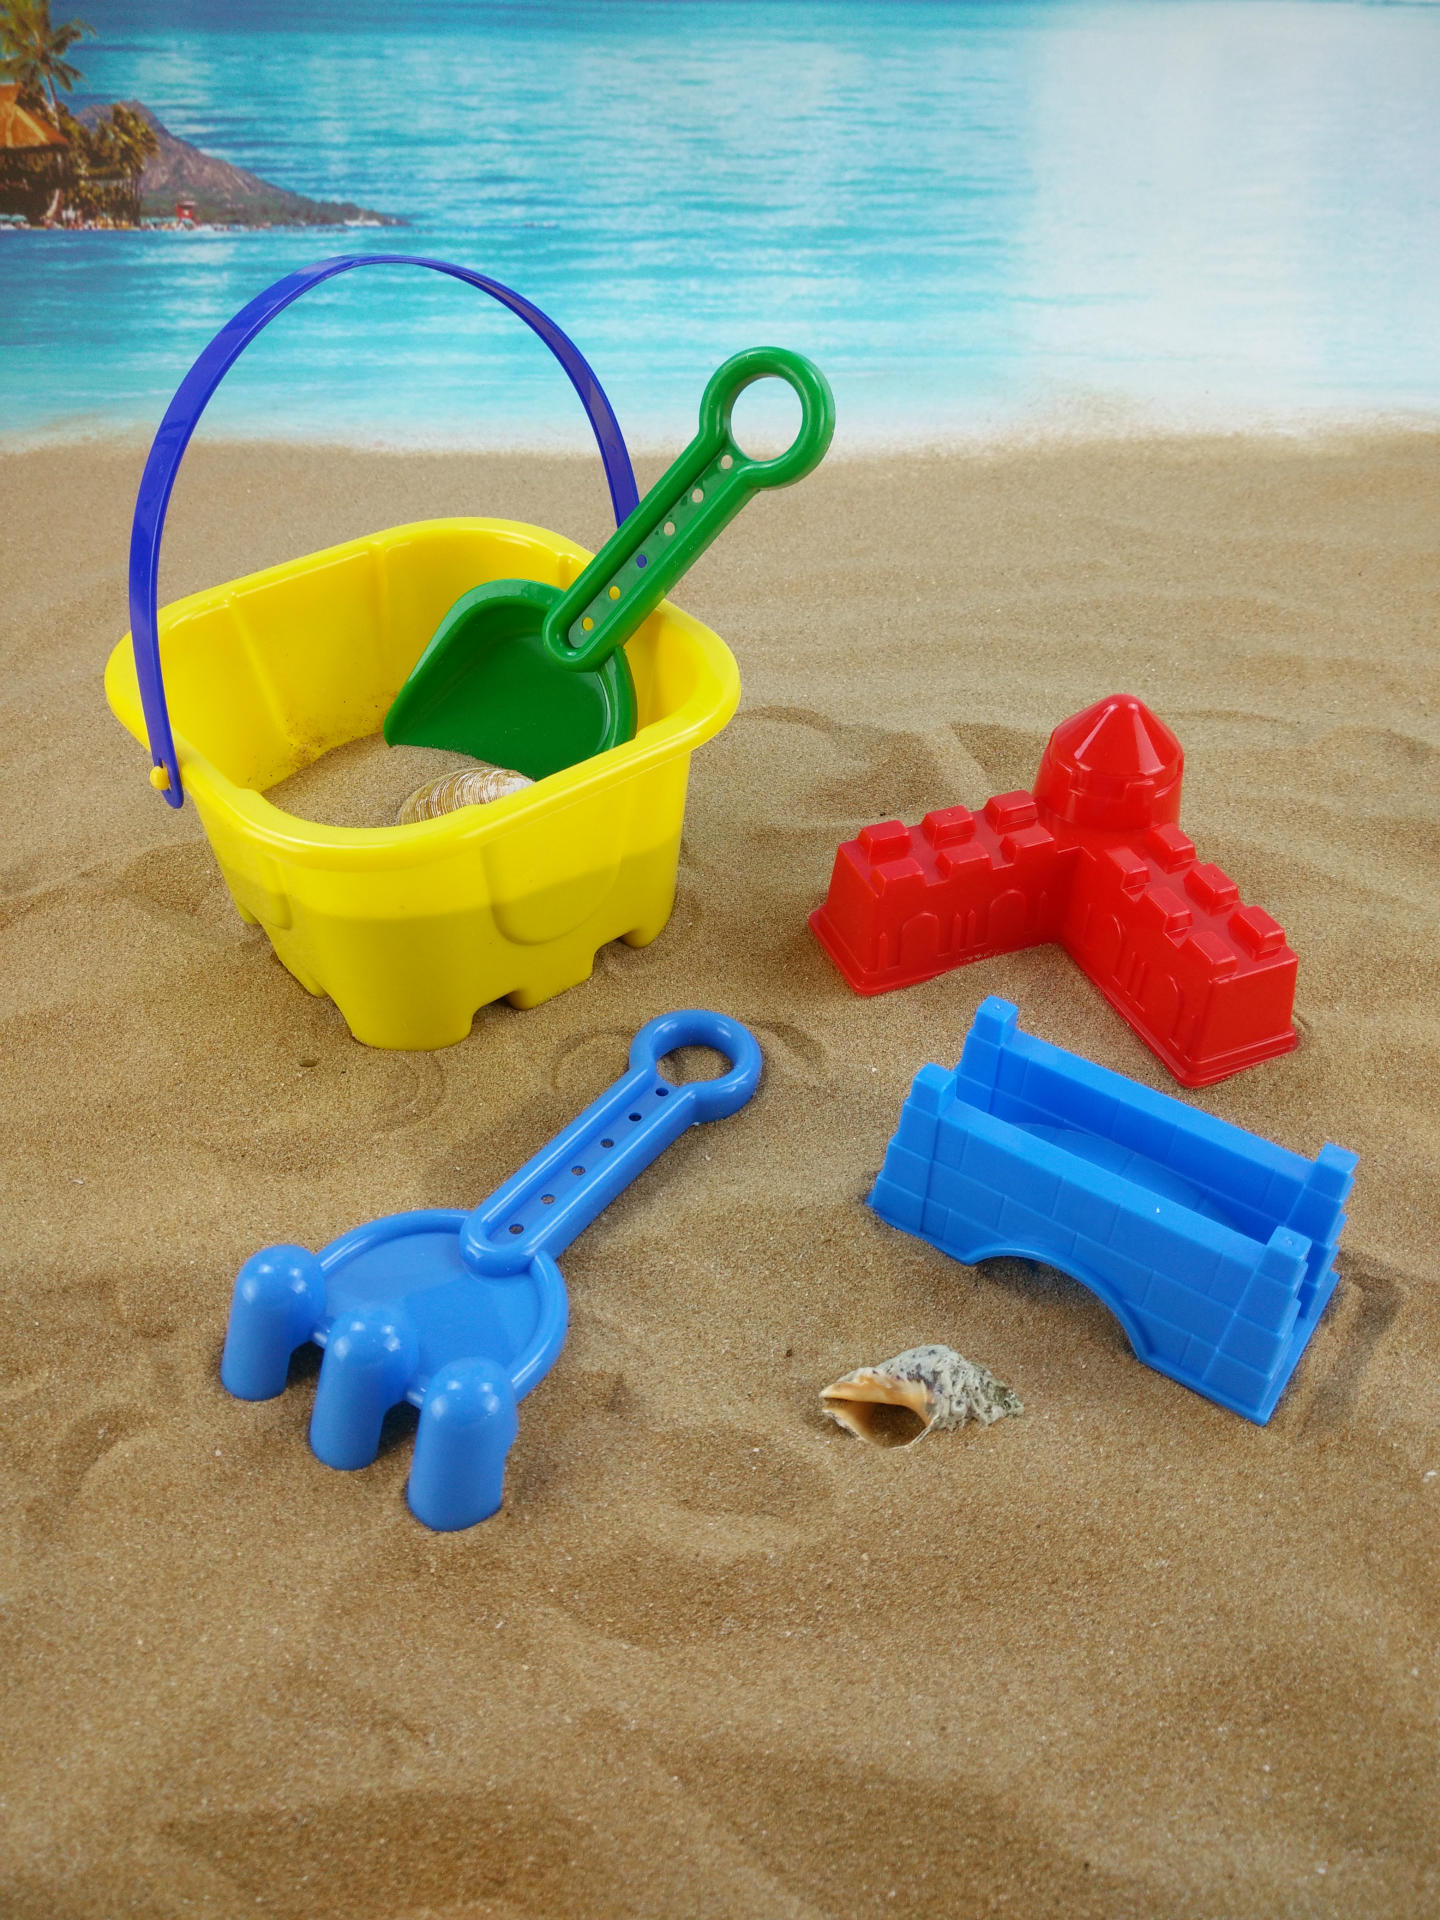 厂家直销2015新款沙滩城堡桶套装 儿童益智玩具 决明子玩具批发